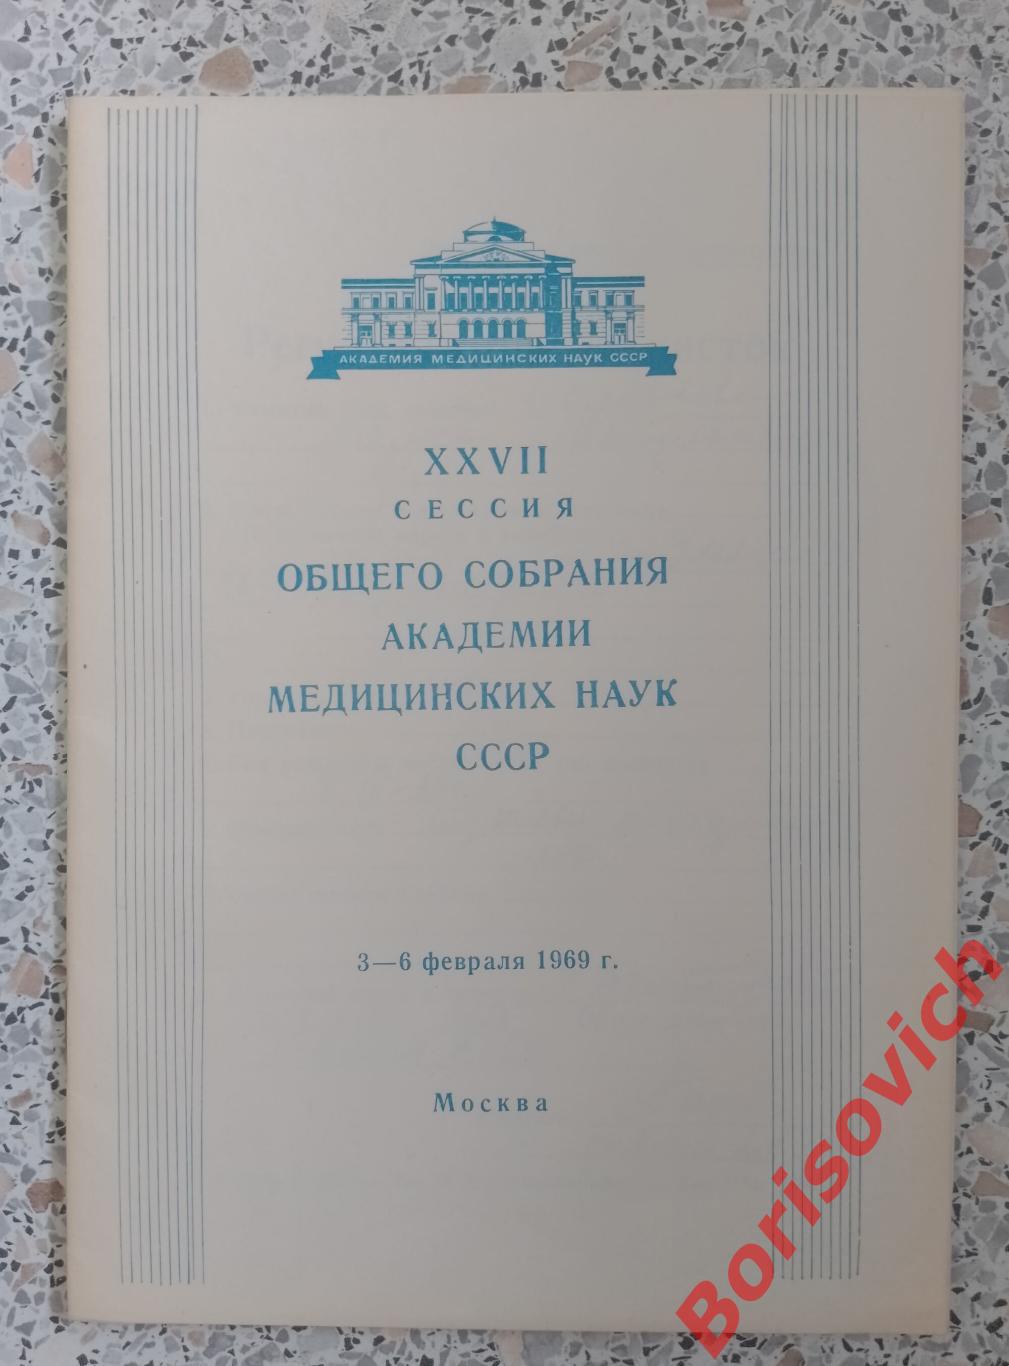 Программа XVIII сессии общего собрания академии медицинских наук СССР 1969 г